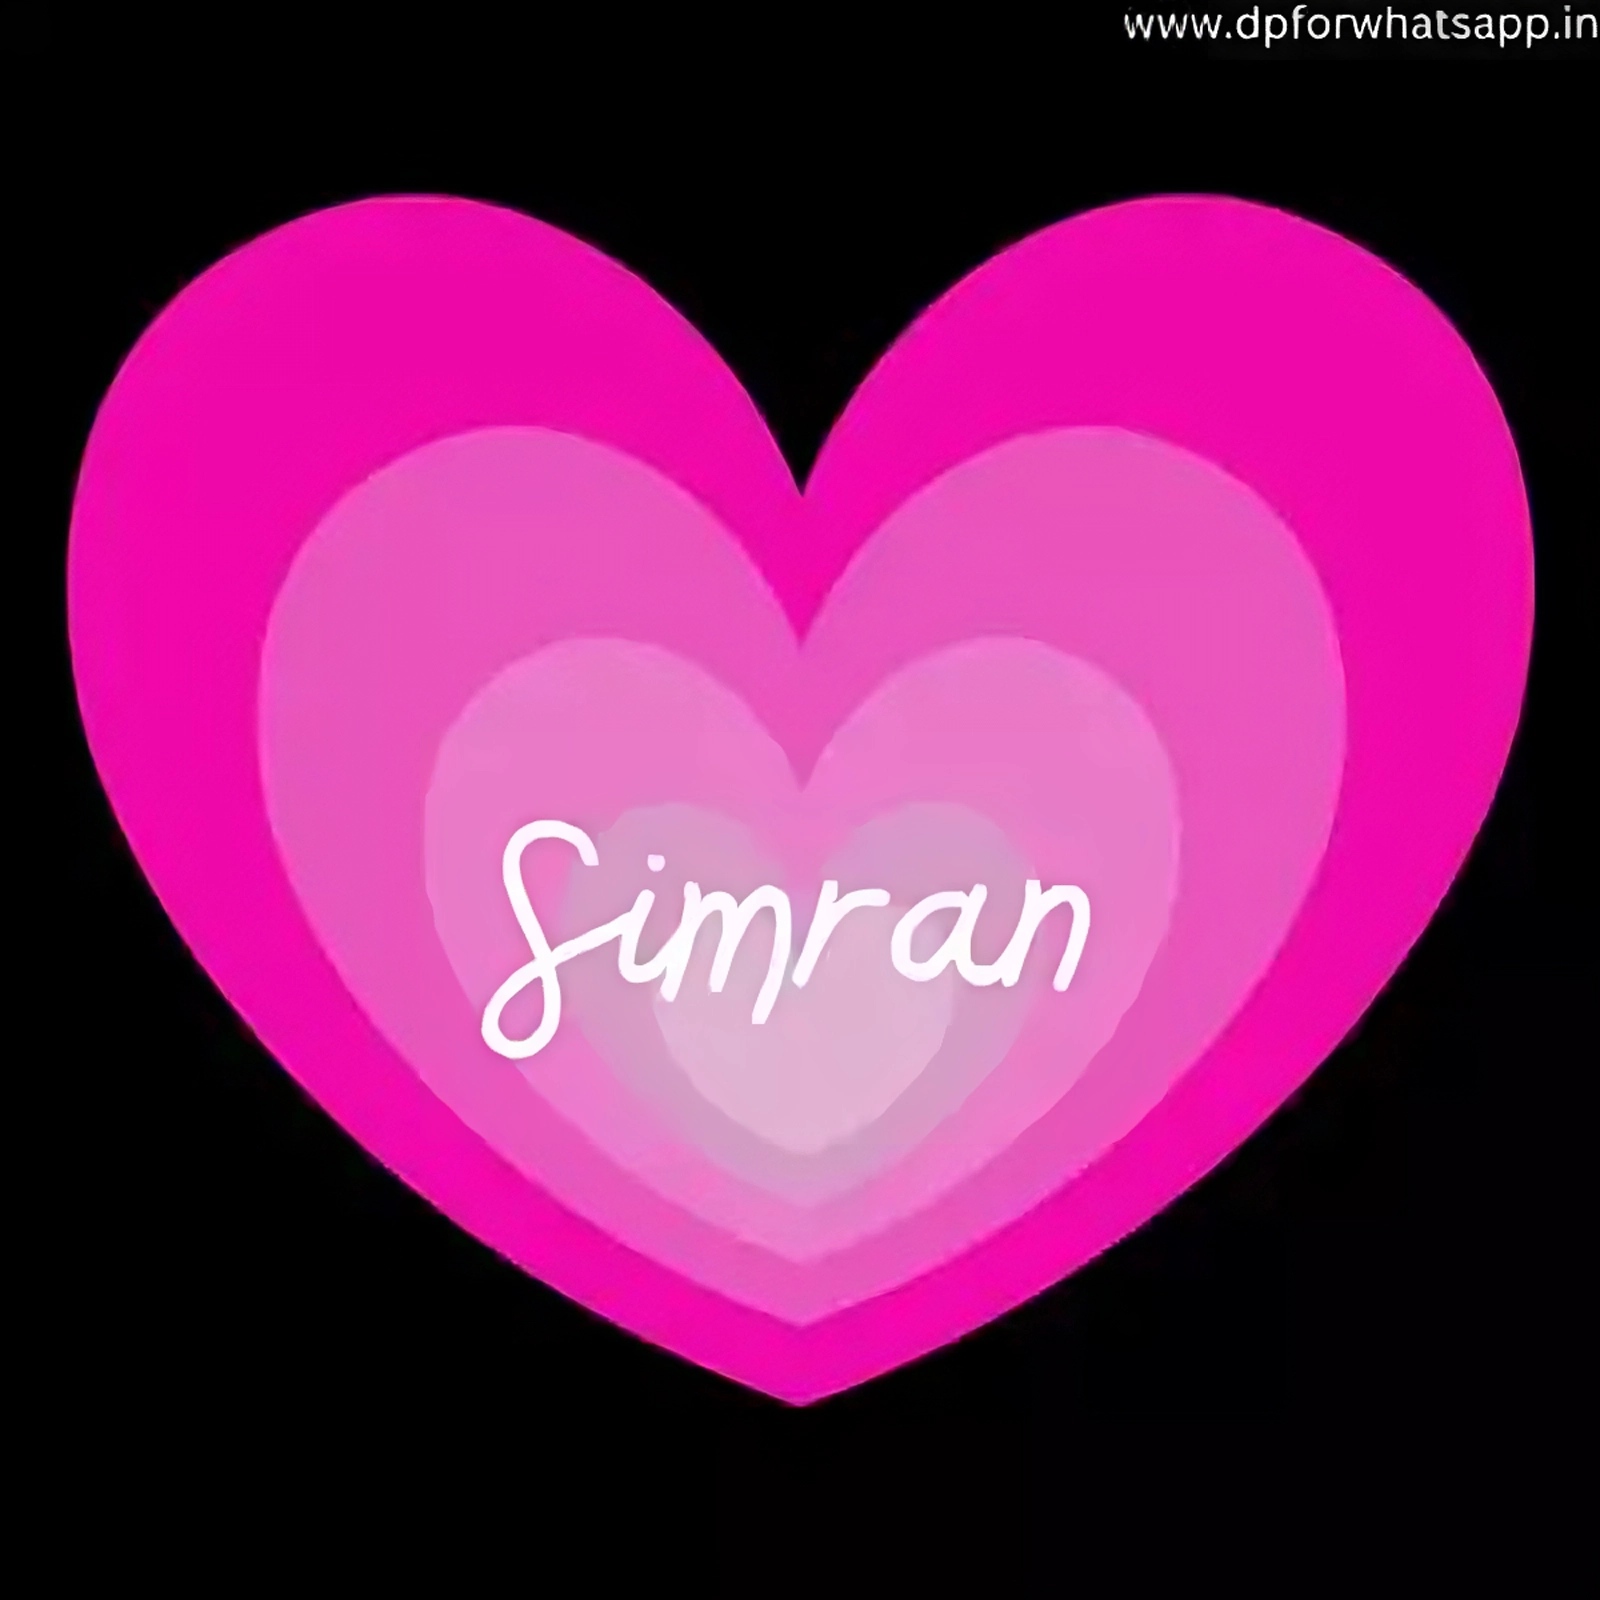 Simran Name - simran in pink heart